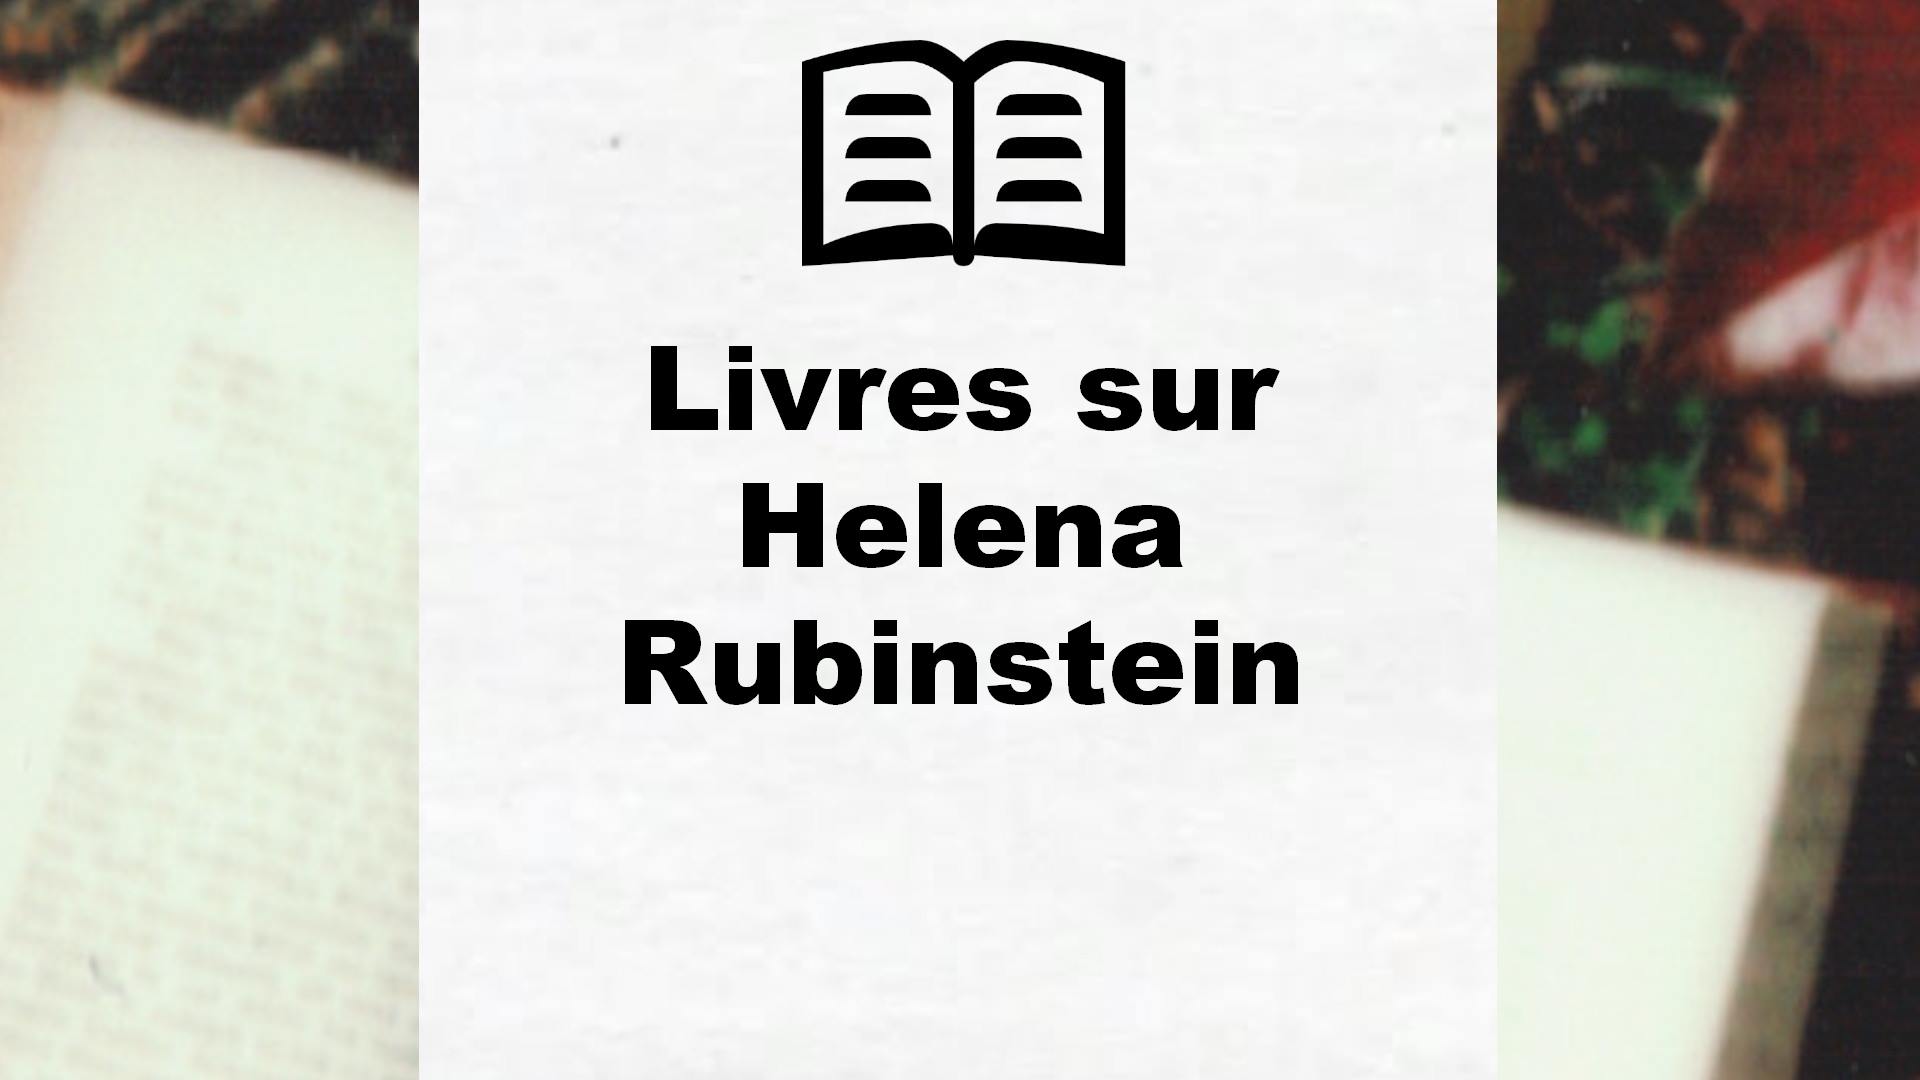 Livres sur Helena Rubinstein